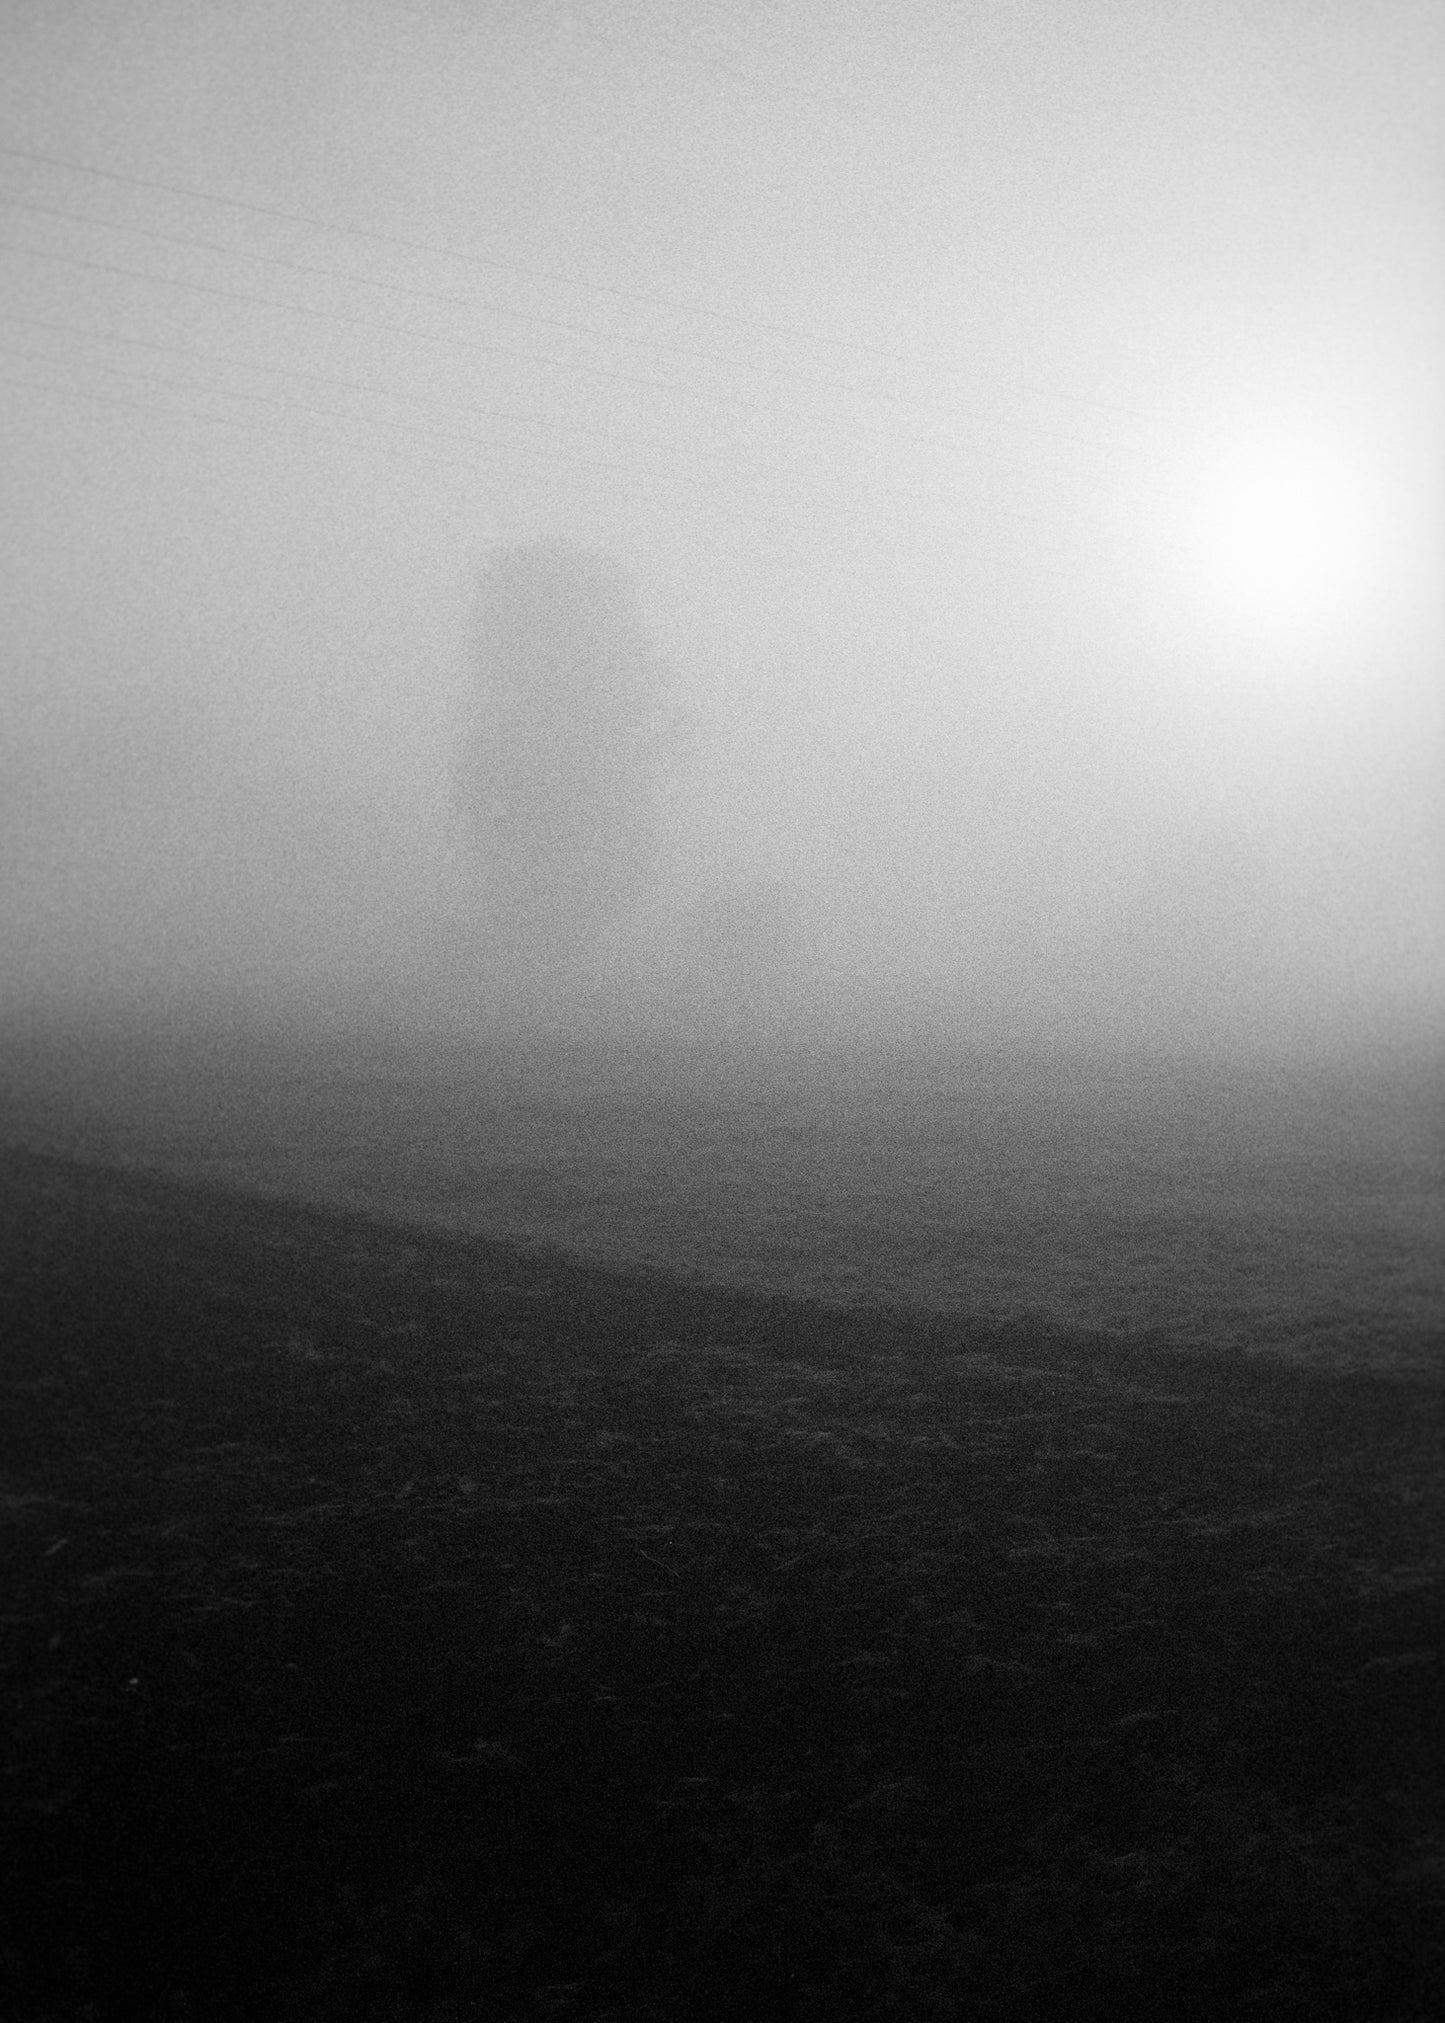 Art Print "Something in the fog"